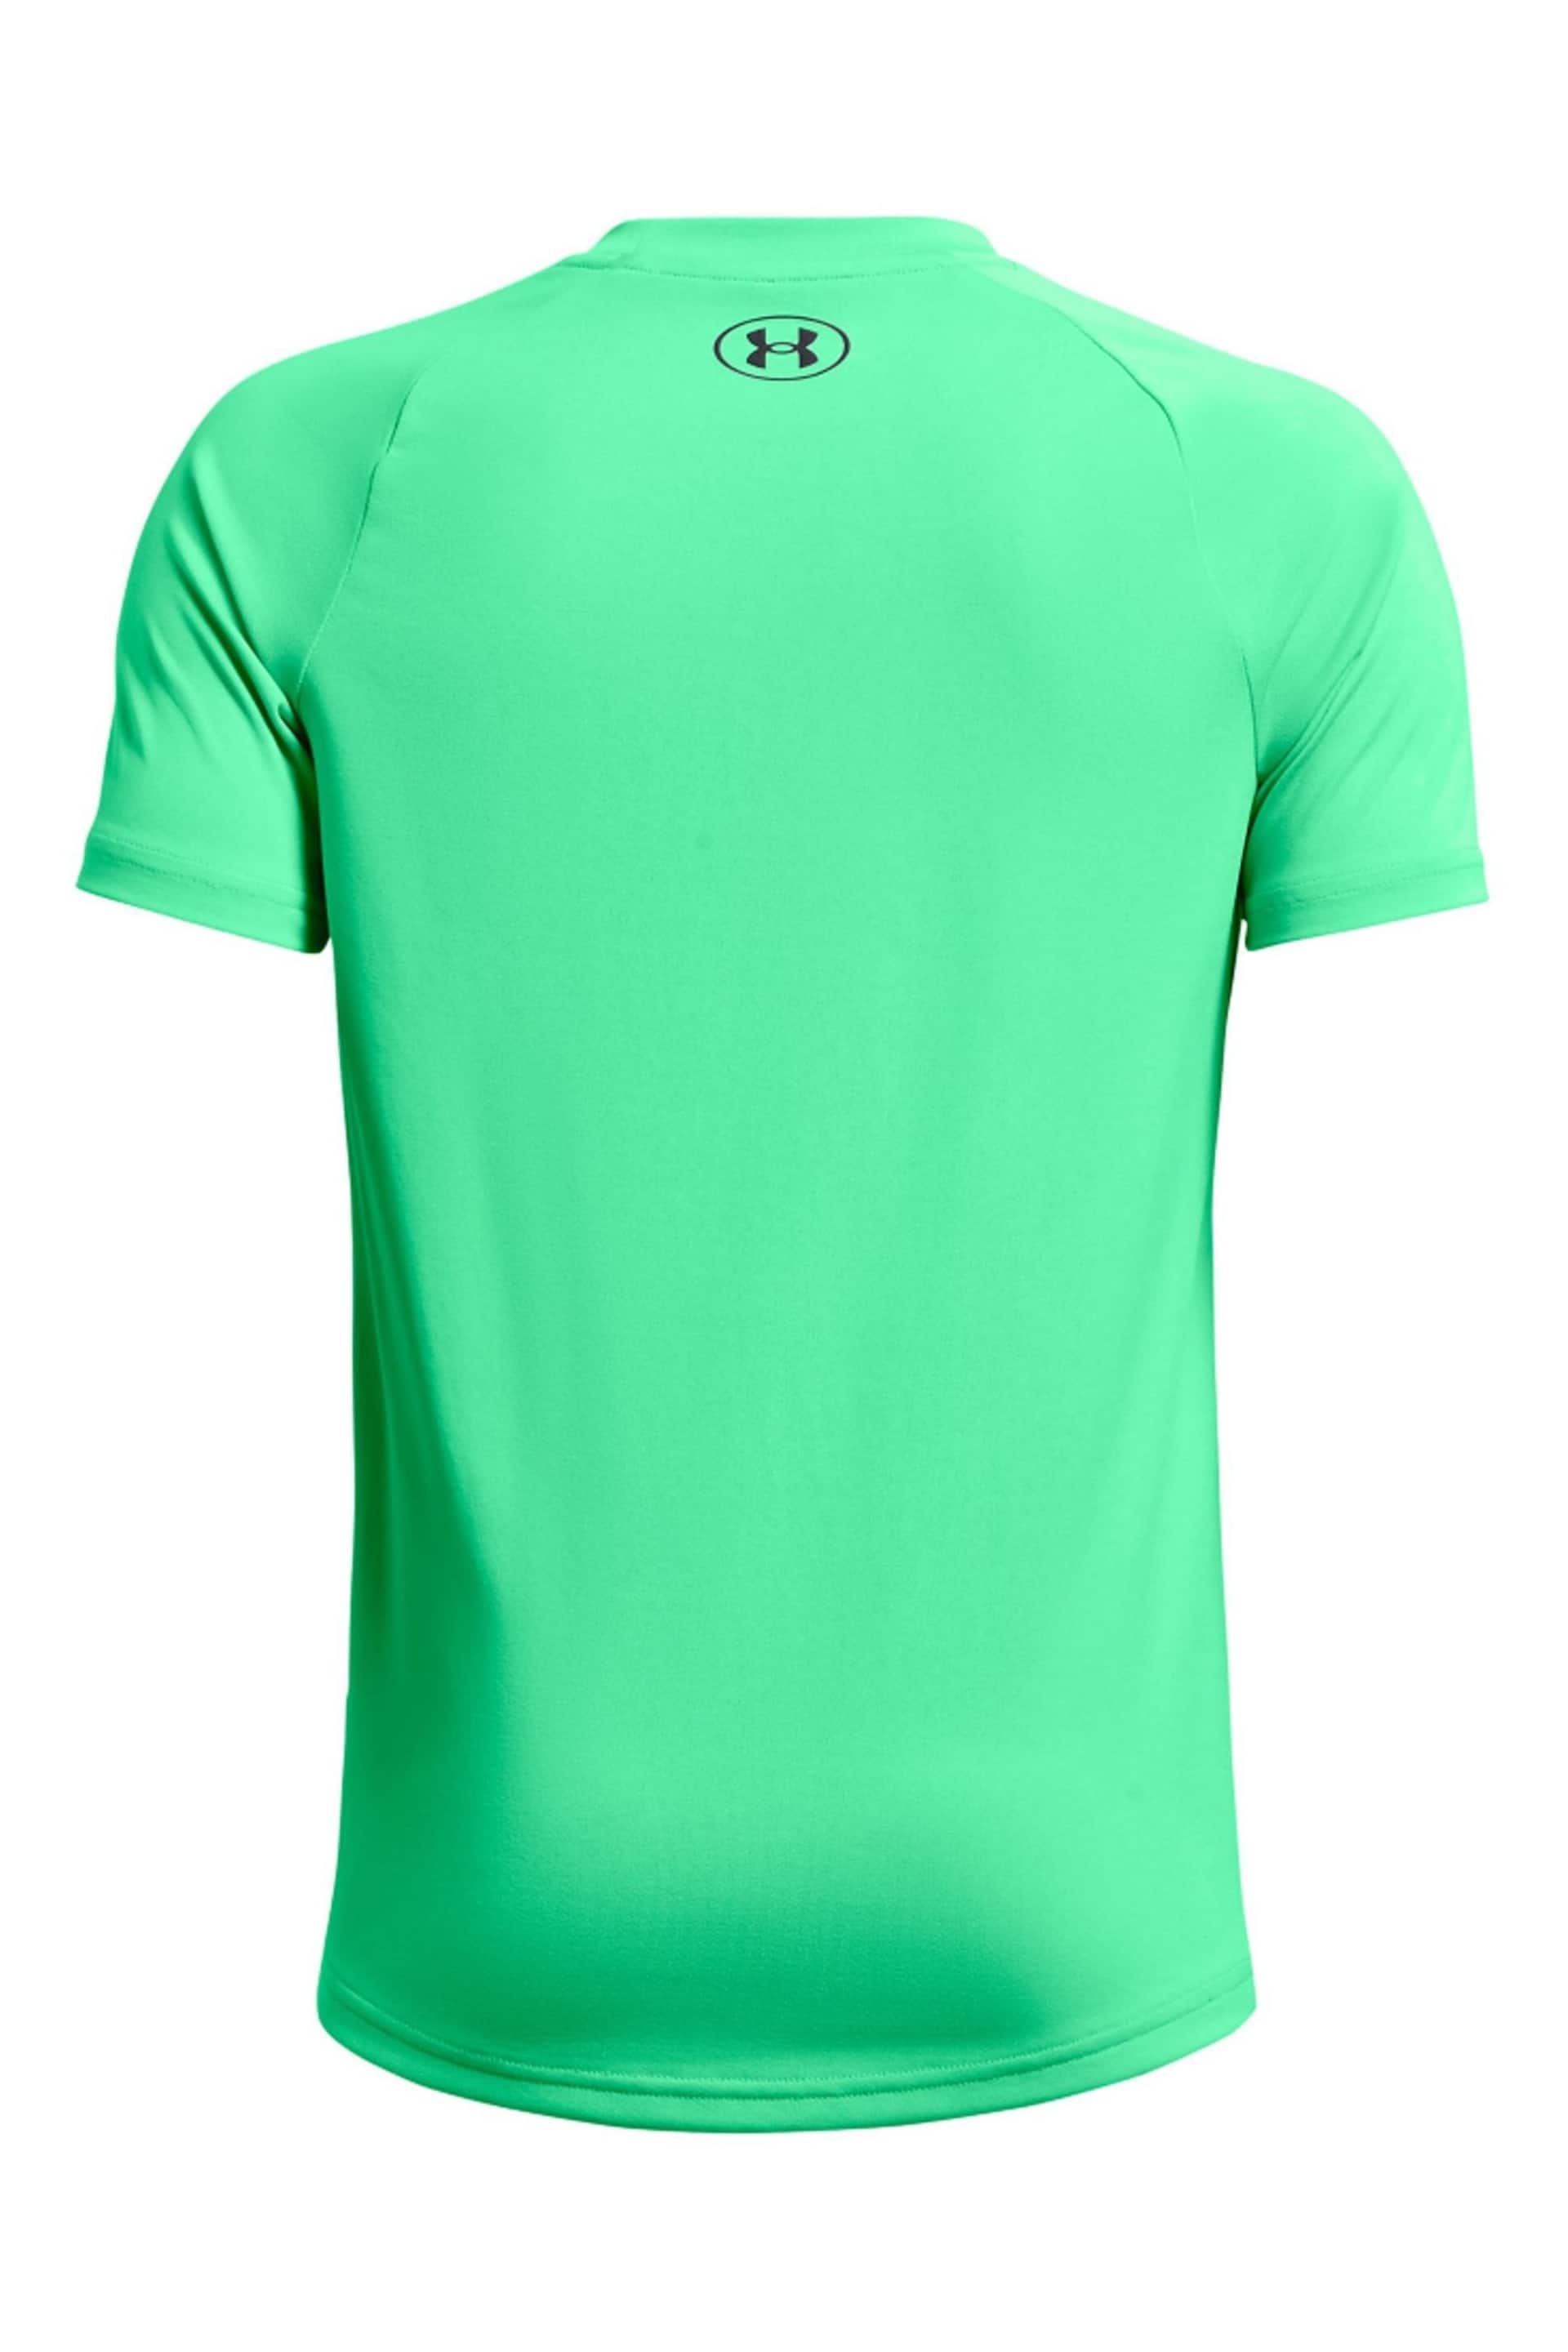 Under Armour Light Green Tech 20 Short Sleeve T-Shirt - Image 2 of 2